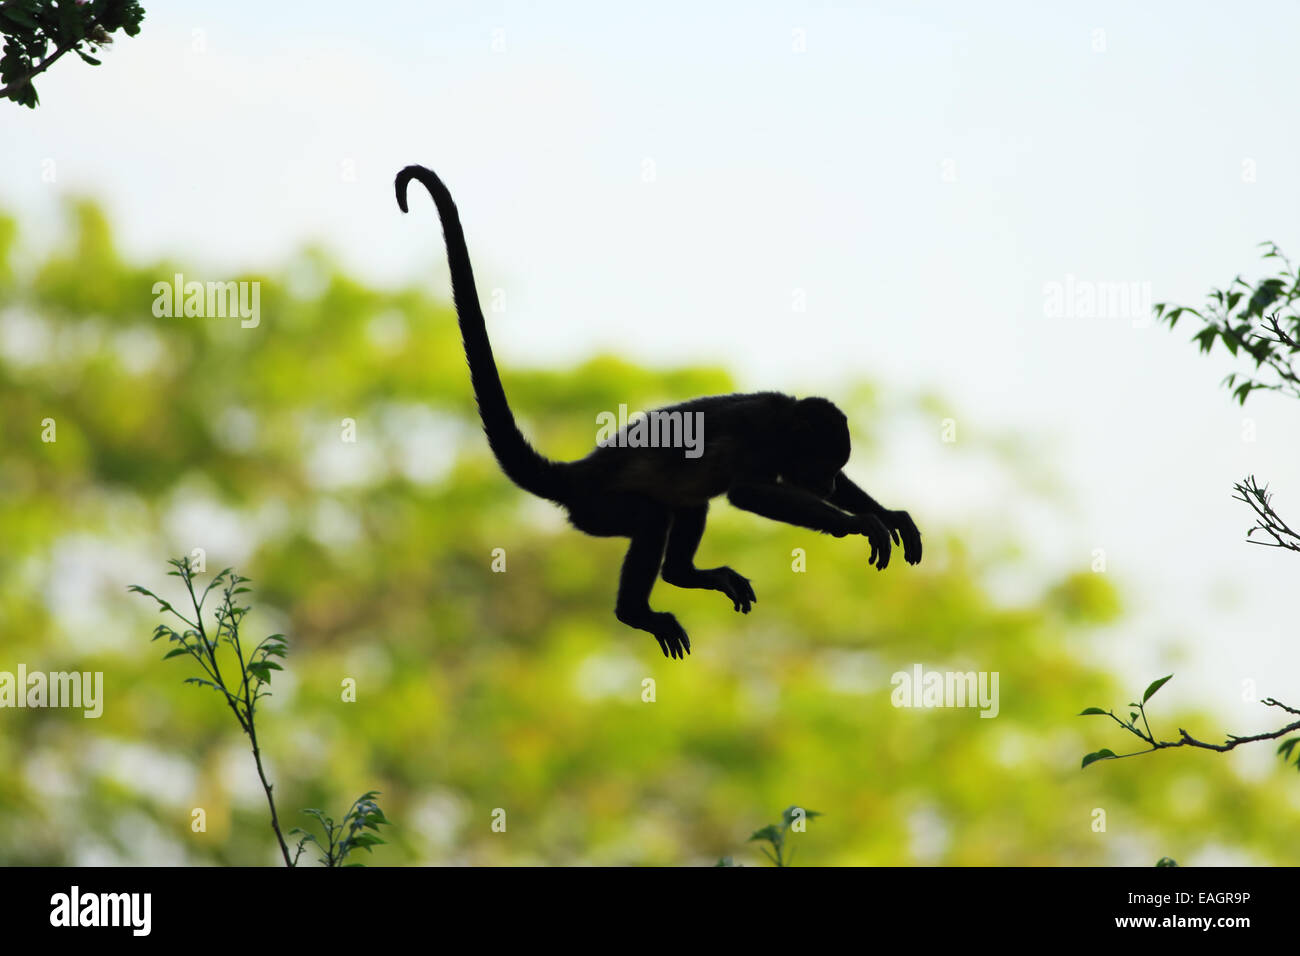 Monkey jump immagini e fotografie stock ad alta risoluzione - Alamy